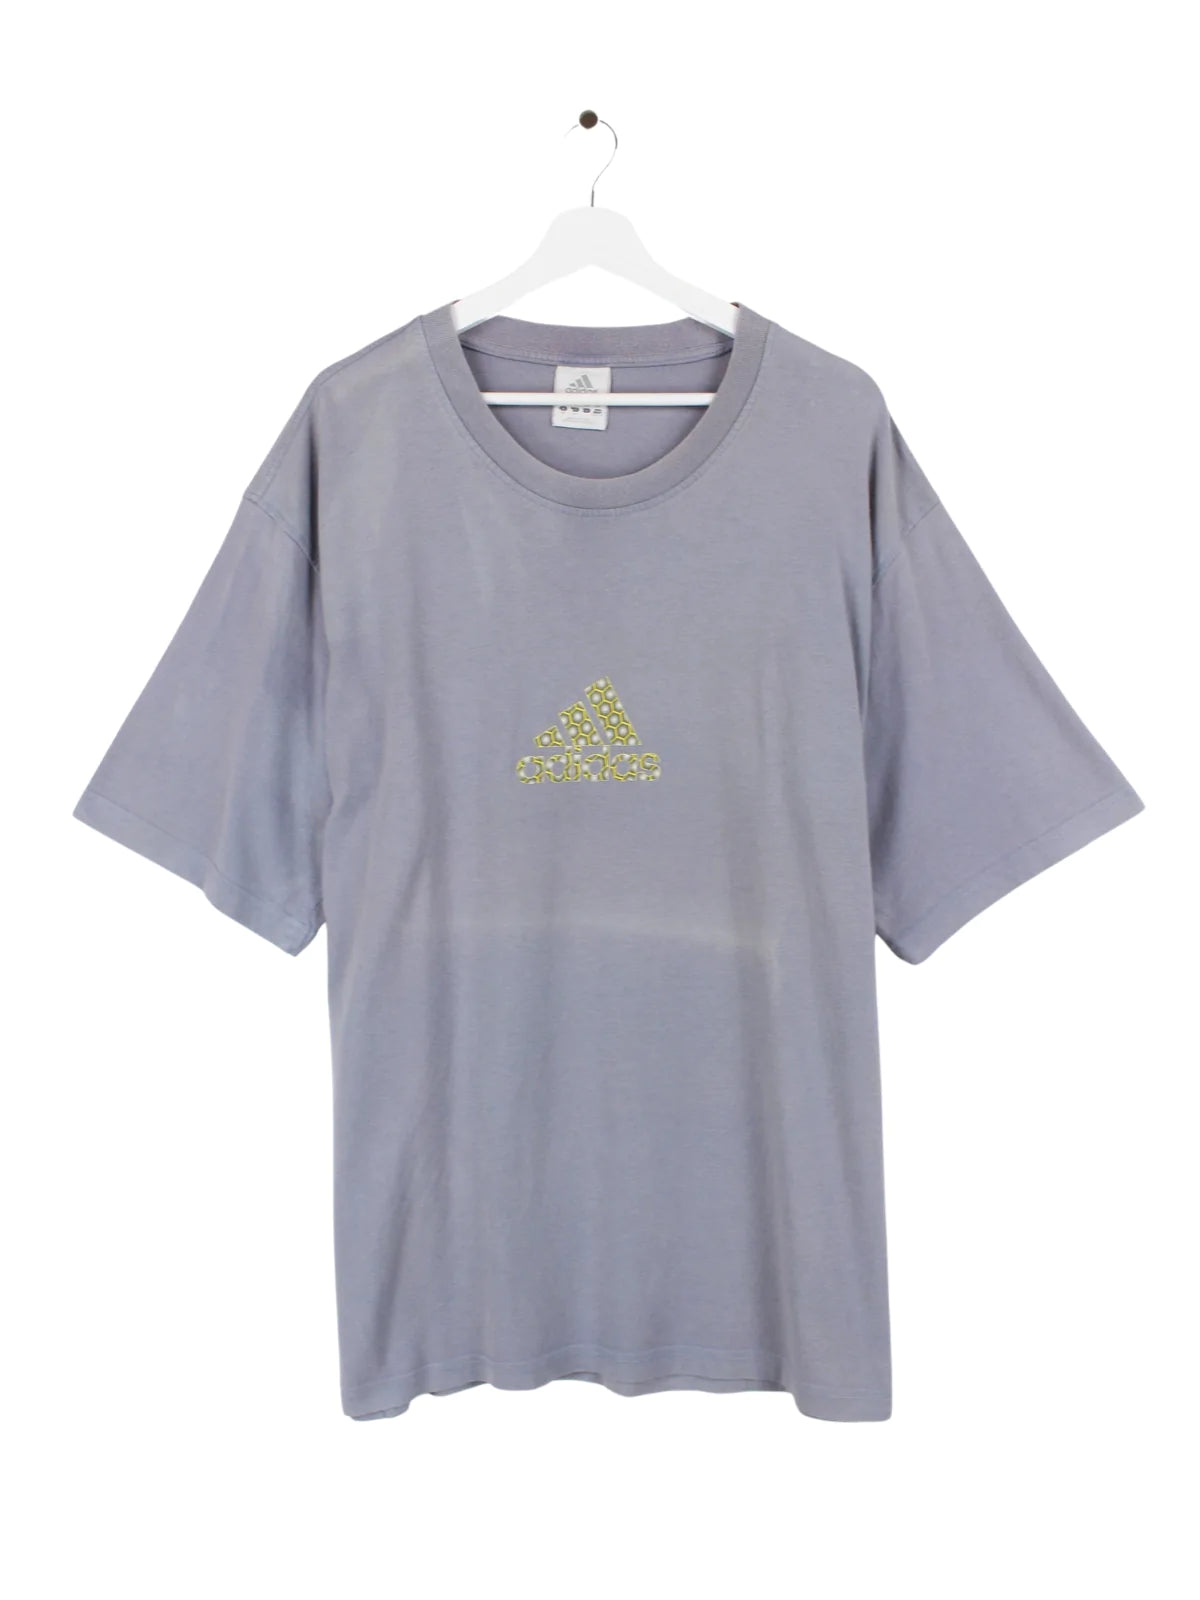 Adidas Logo T-Shirt Grau XXL